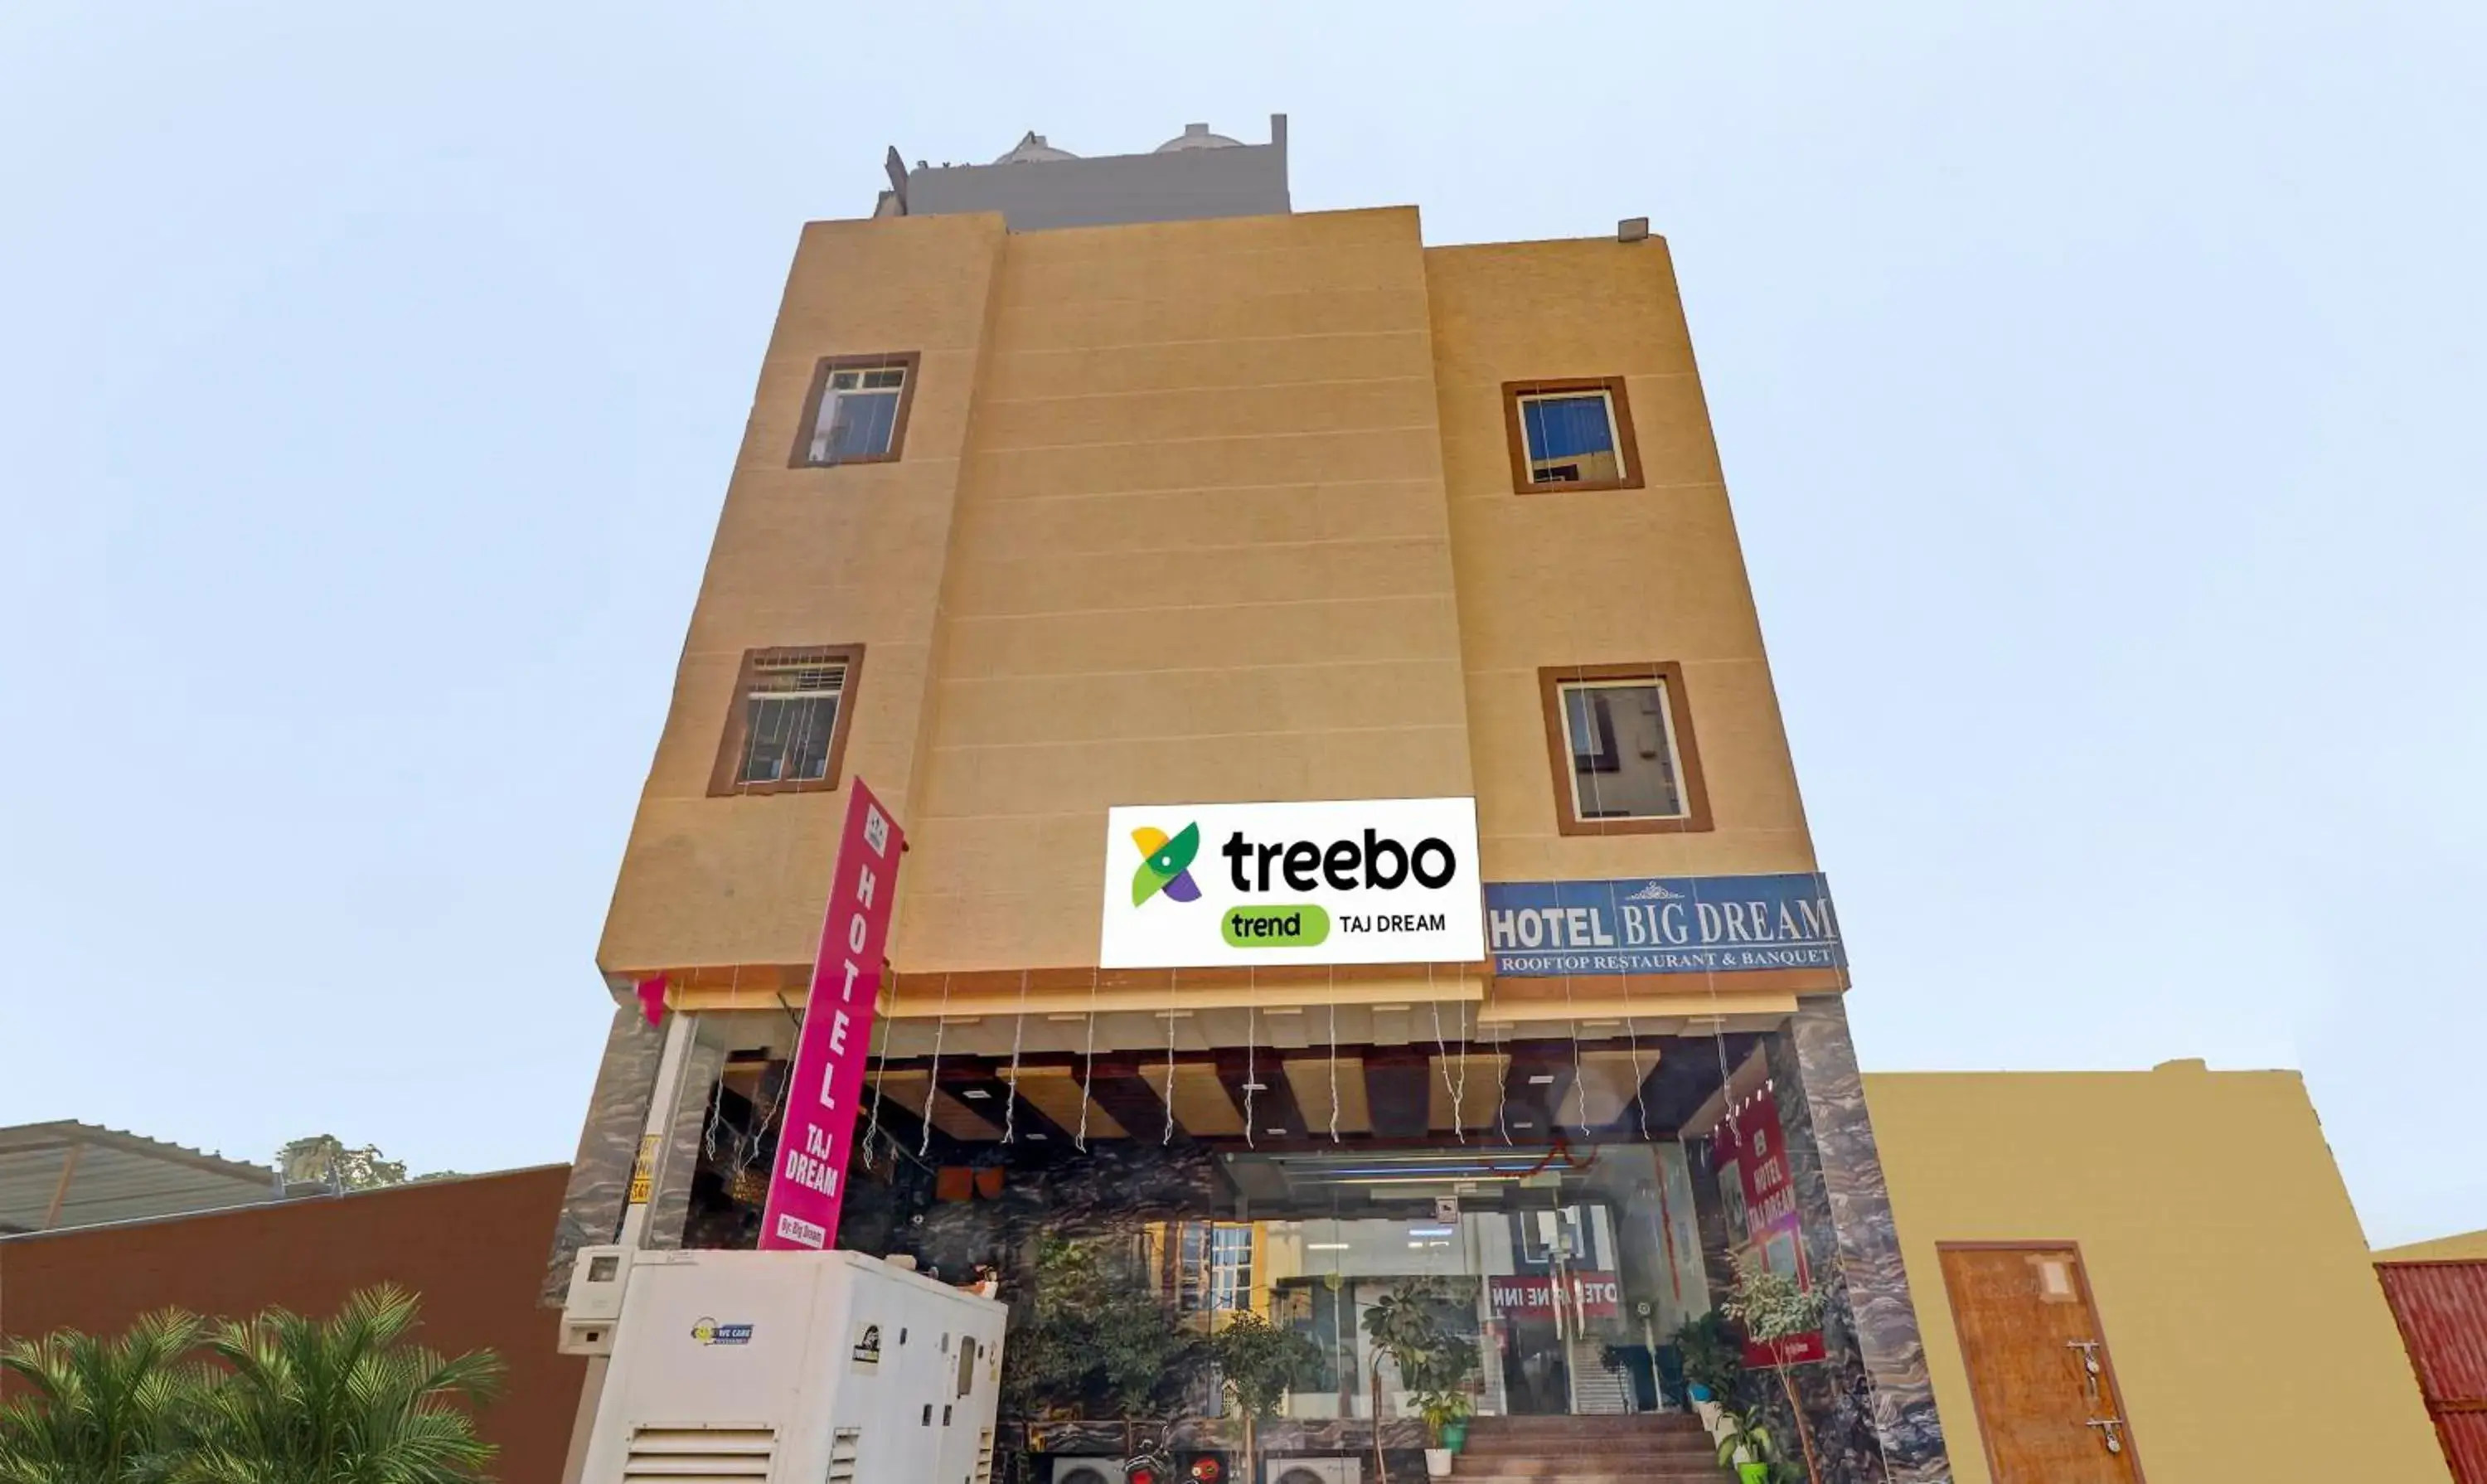 Property Building in Treebo Trend Taj Dream